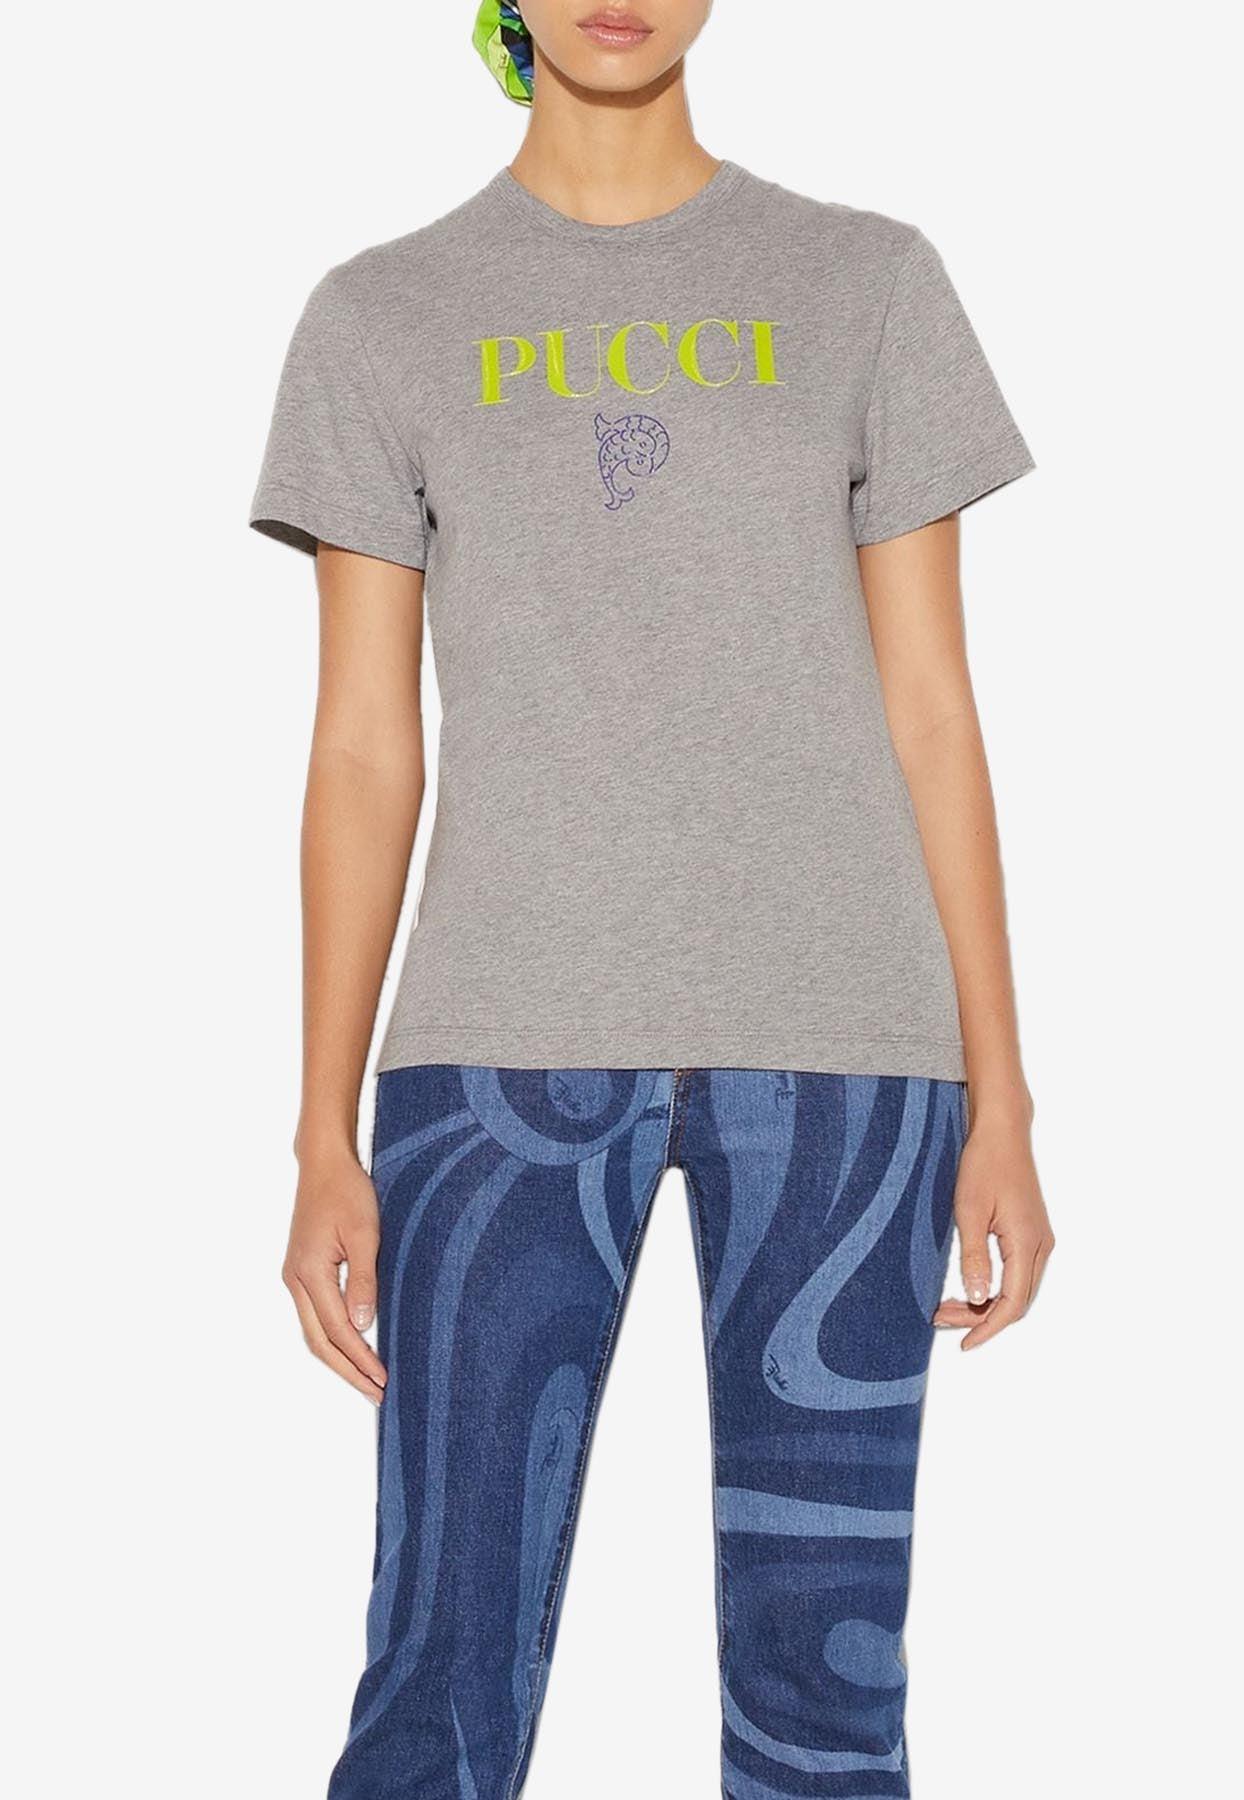 Emilio Pucci Onde Print Logo T-shirt in Blue